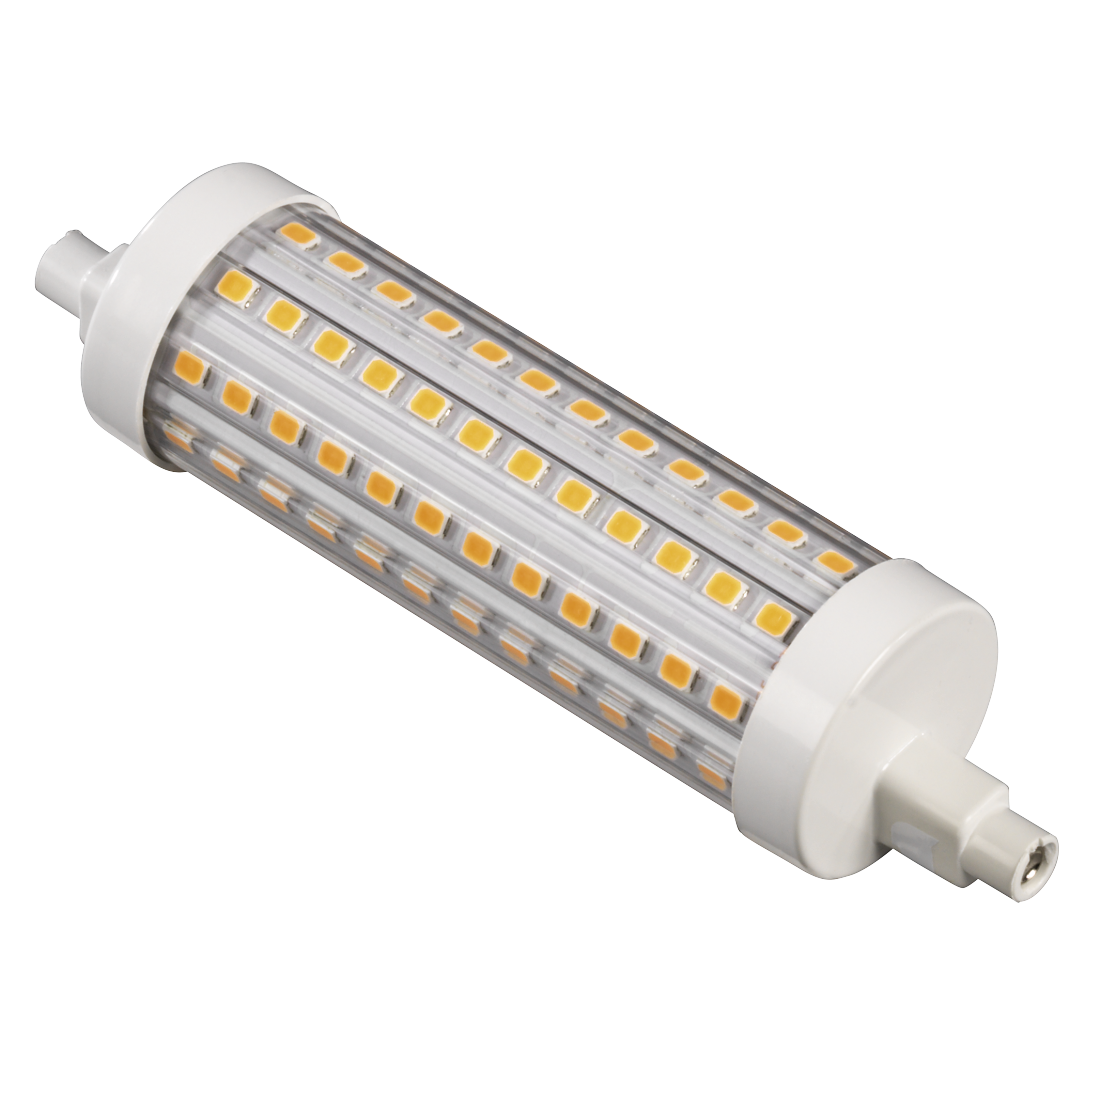 abx Druckfähige Abbildung - Xavax, LED-Lampe, R7s, 2000lm ersetzt 125W, Stablampe, Warmweiß, dimmbar